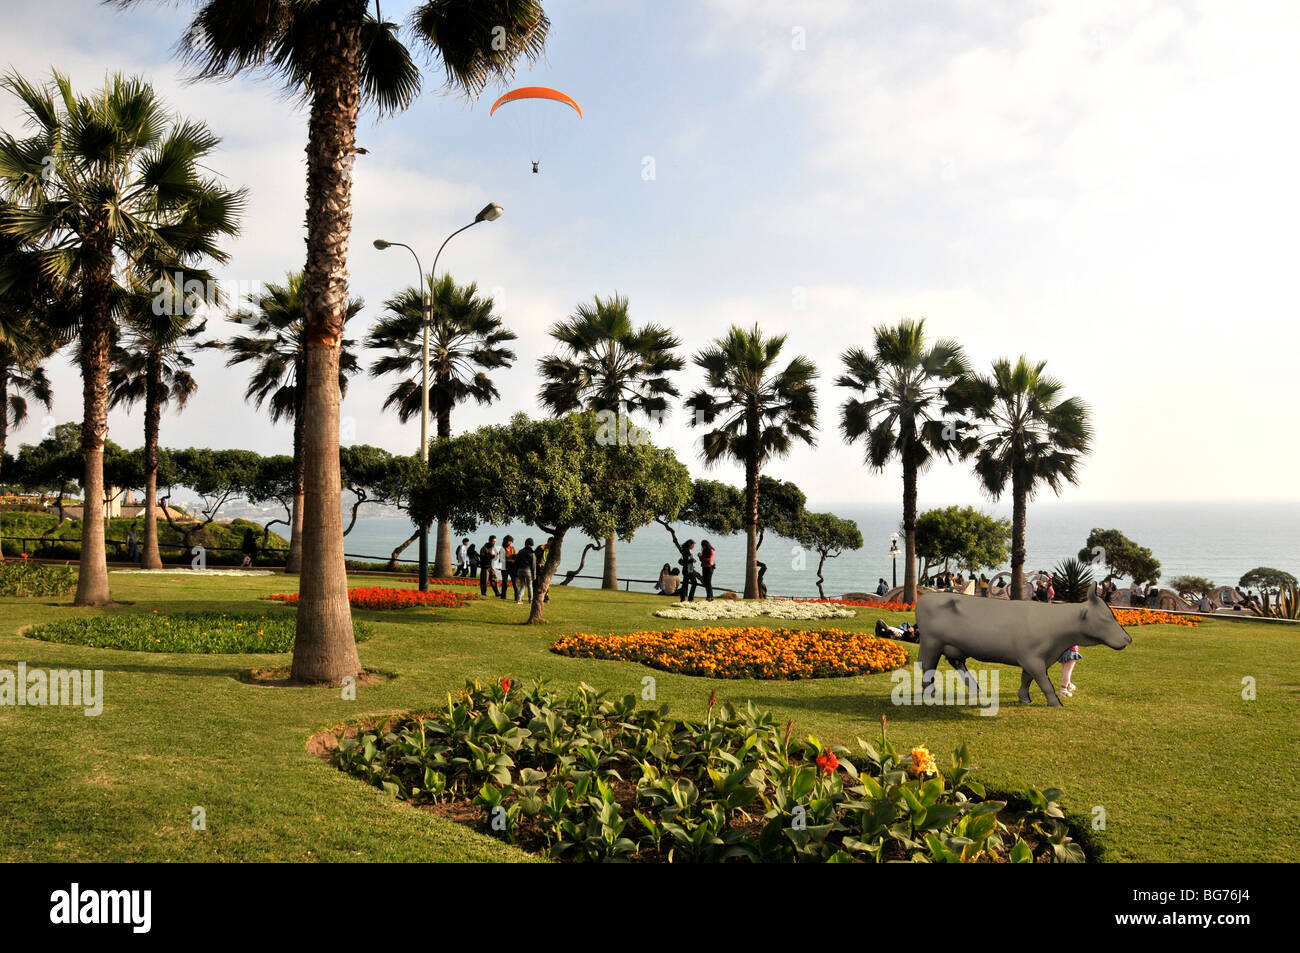 Drachenfliegen in den Garten der Liebe, Miraflores Lima Peru Stockfoto